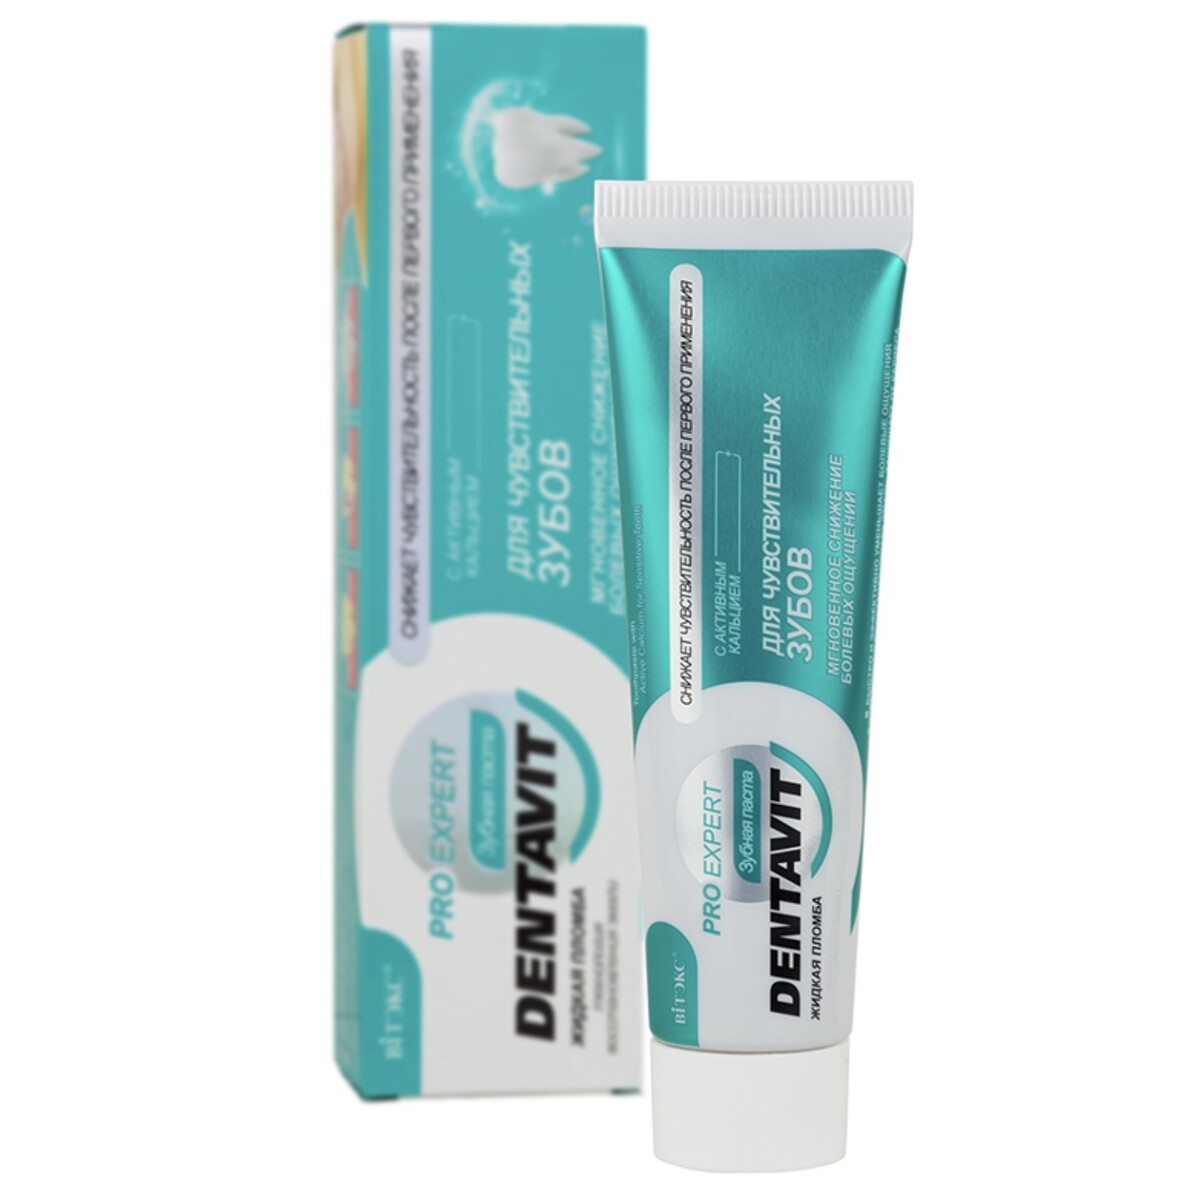 Dentavit pro expert зубная паста для чувствительных зубов с активным кальцием, 85 г.+ коробка dentavit pro expert зубная паста защита зубов и десен без фтора 85 г короб